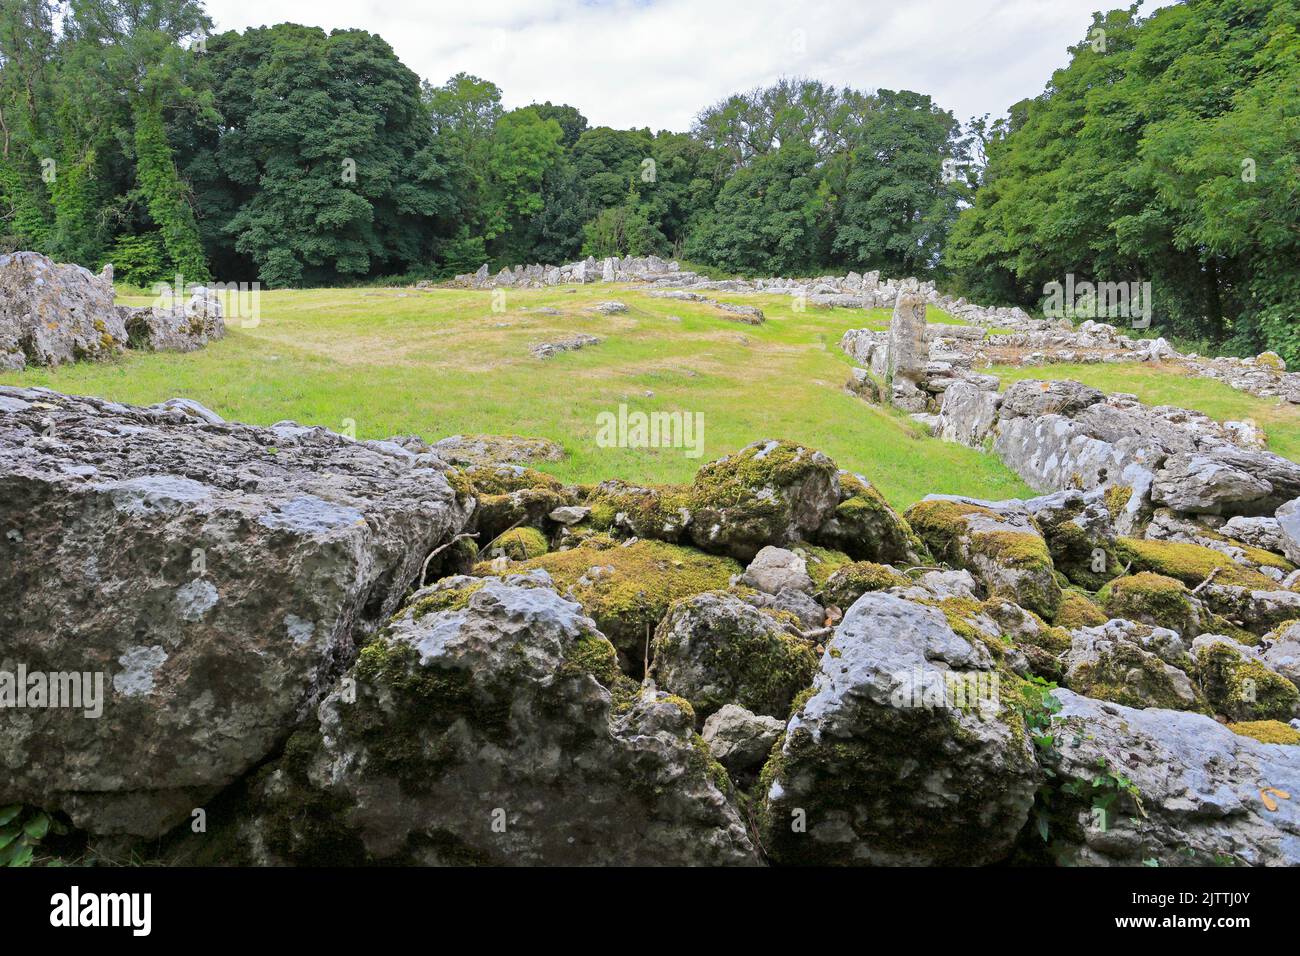 DIN Lligwy antico insediamento in pietra rovinata vicino Moelfre, Isola di Anglesey, Ynys Mon, Galles del Nord, Regno Unito. Foto Stock